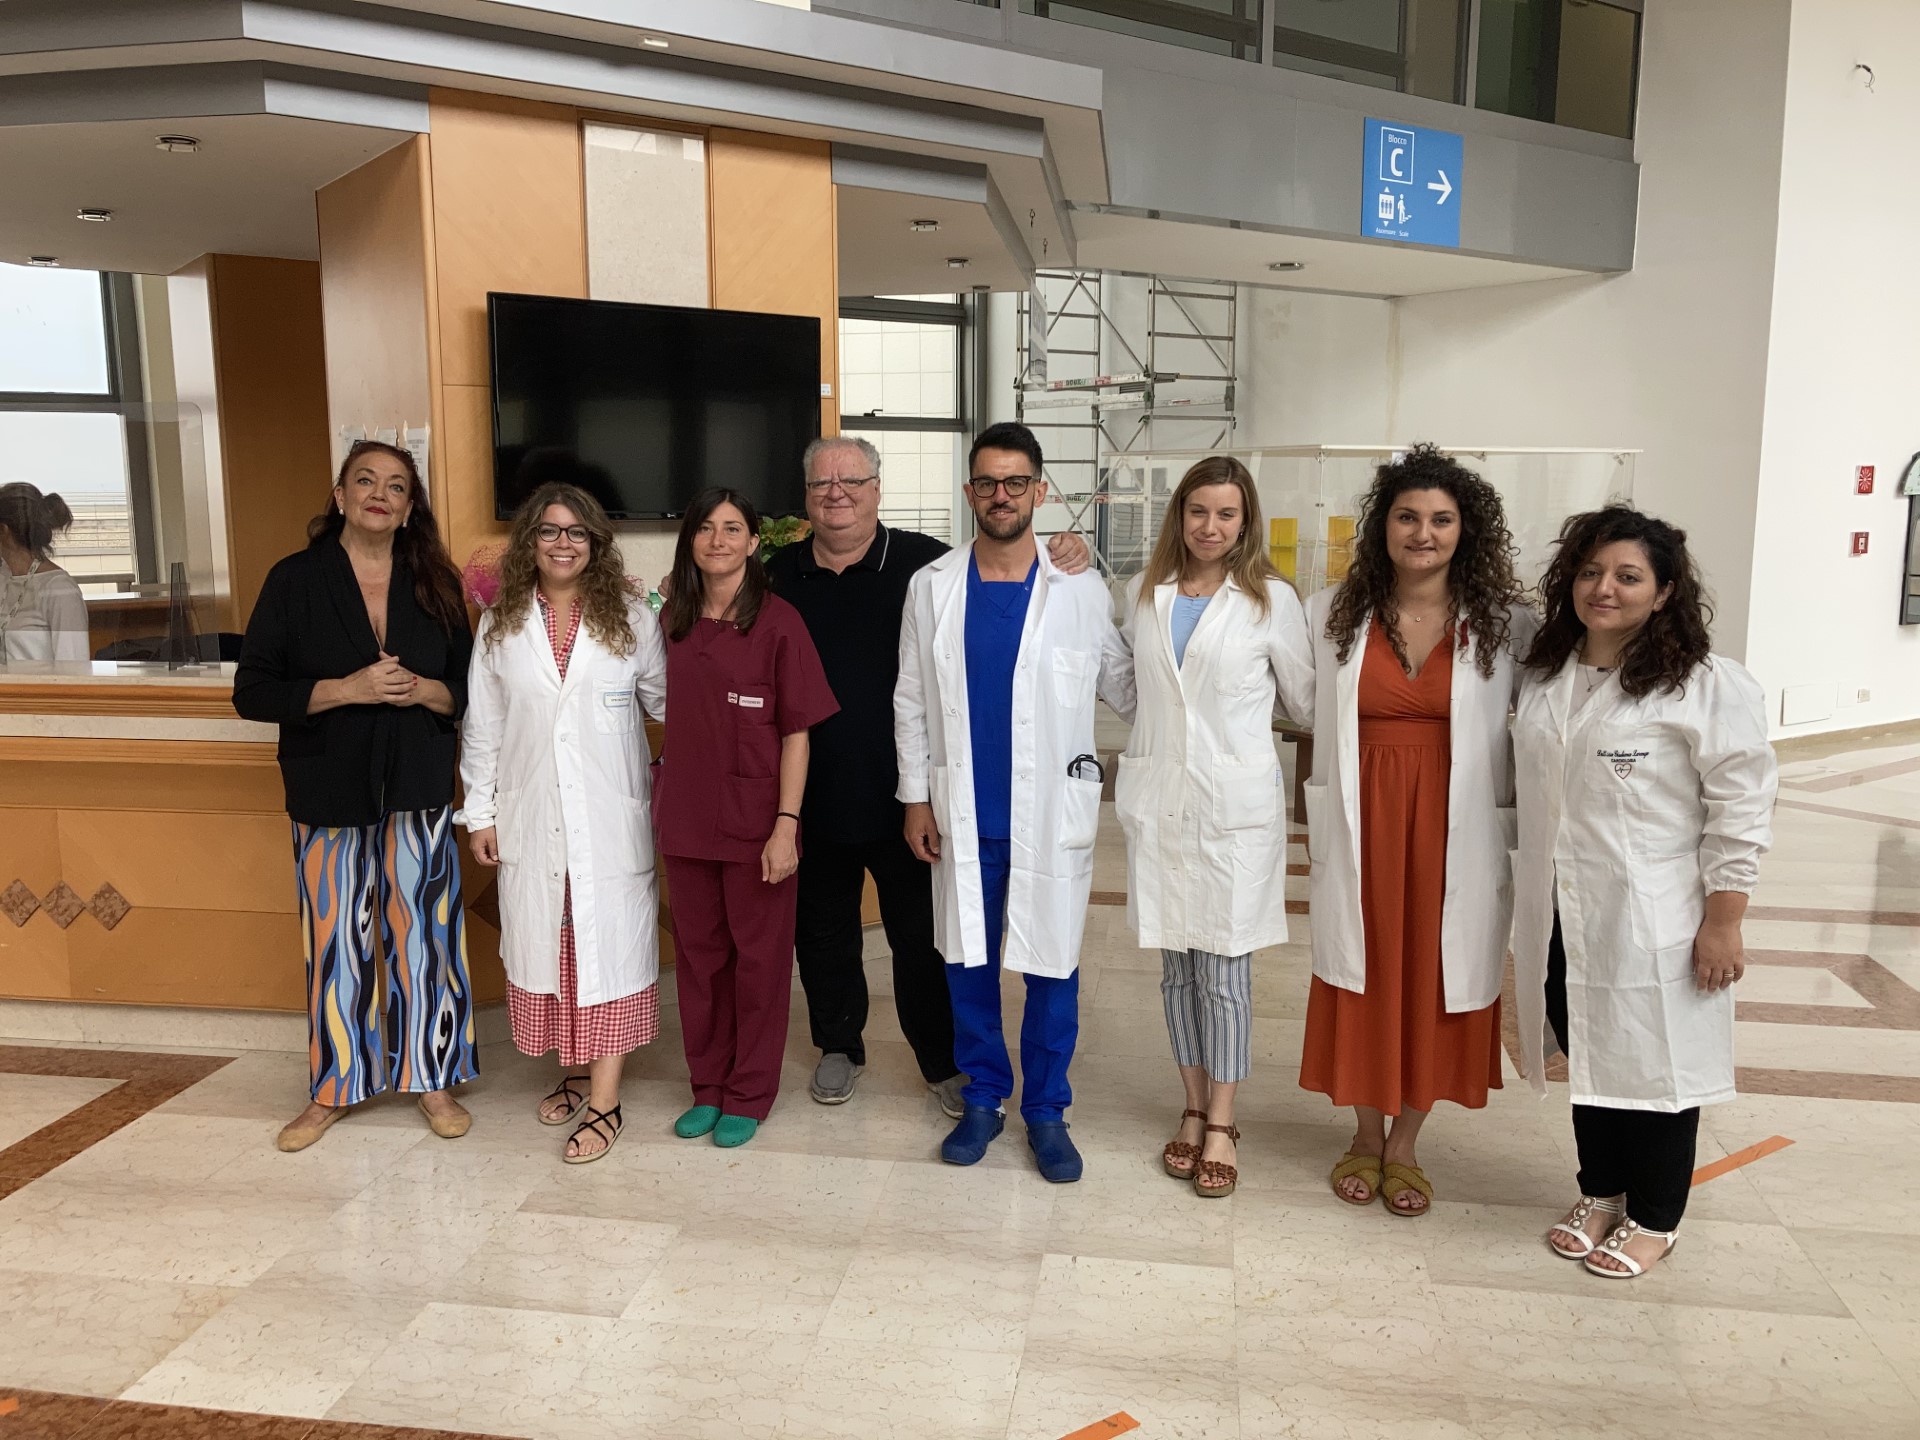 Nuove assunzioni di medici ed infermieri all’Ospedale Madonna delle Grazie di Matera. In servizio da oggi sette nuovi professionisti